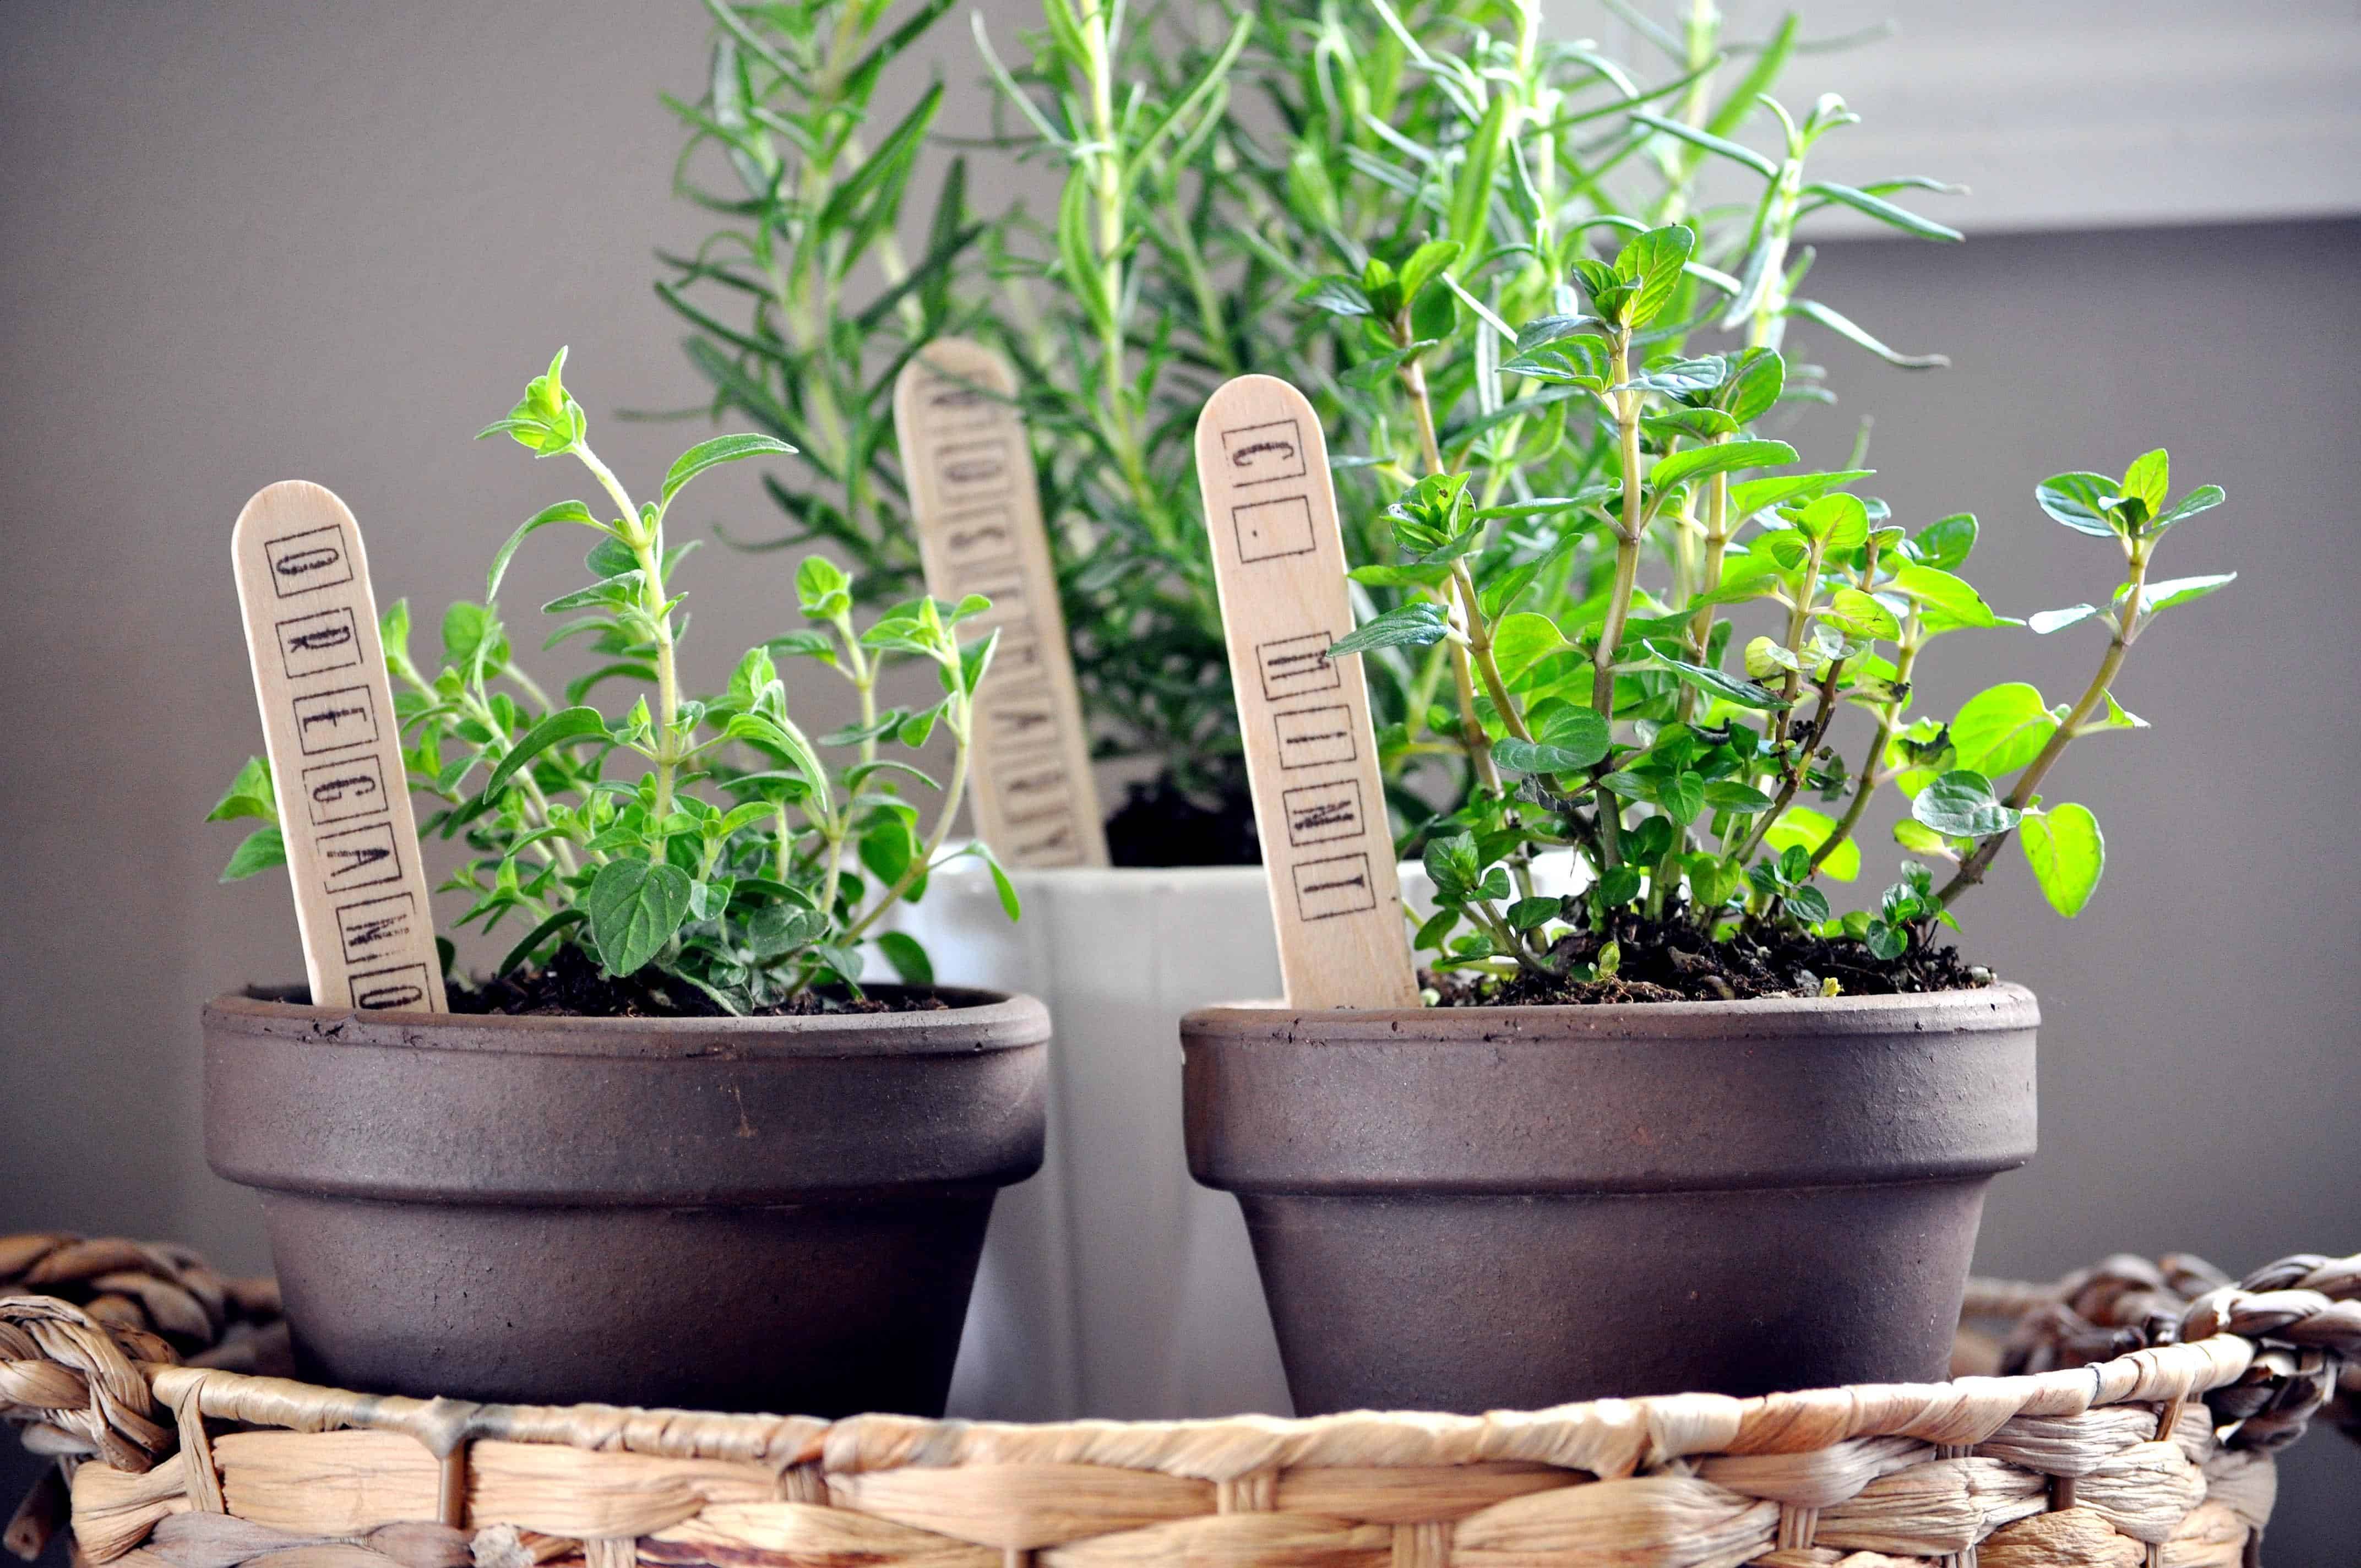 Your Own Kitchen Countertop Herb Garden